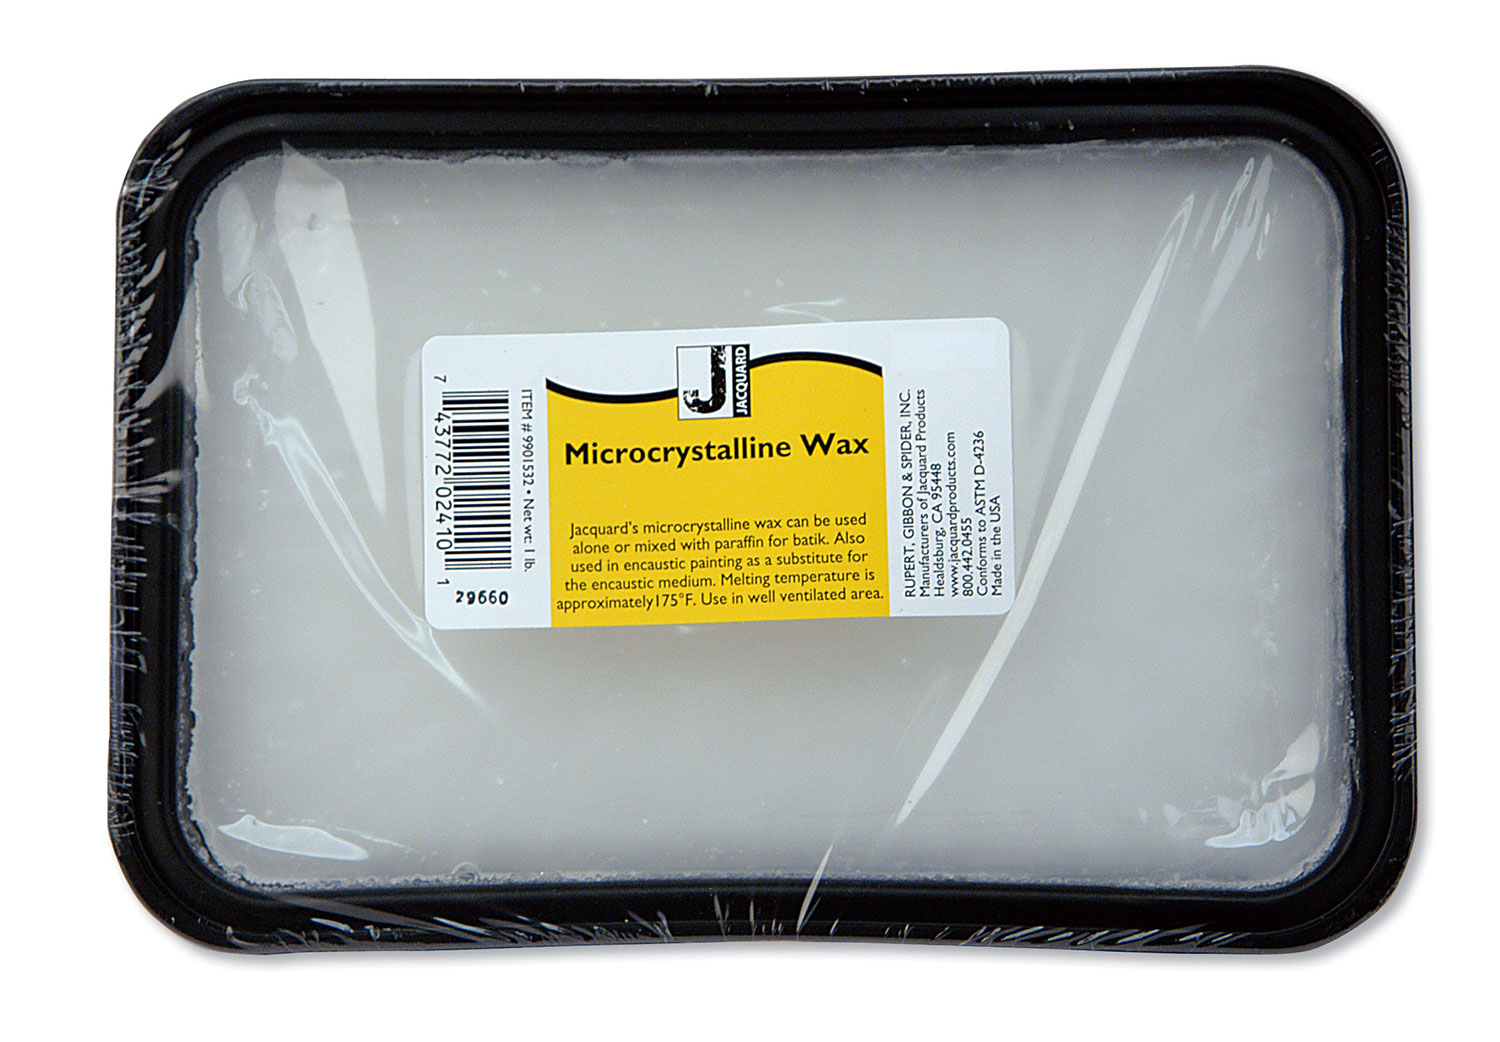 Microcrystalline Wax - UK Supplier, Retailer, Wholesaler & Distributor